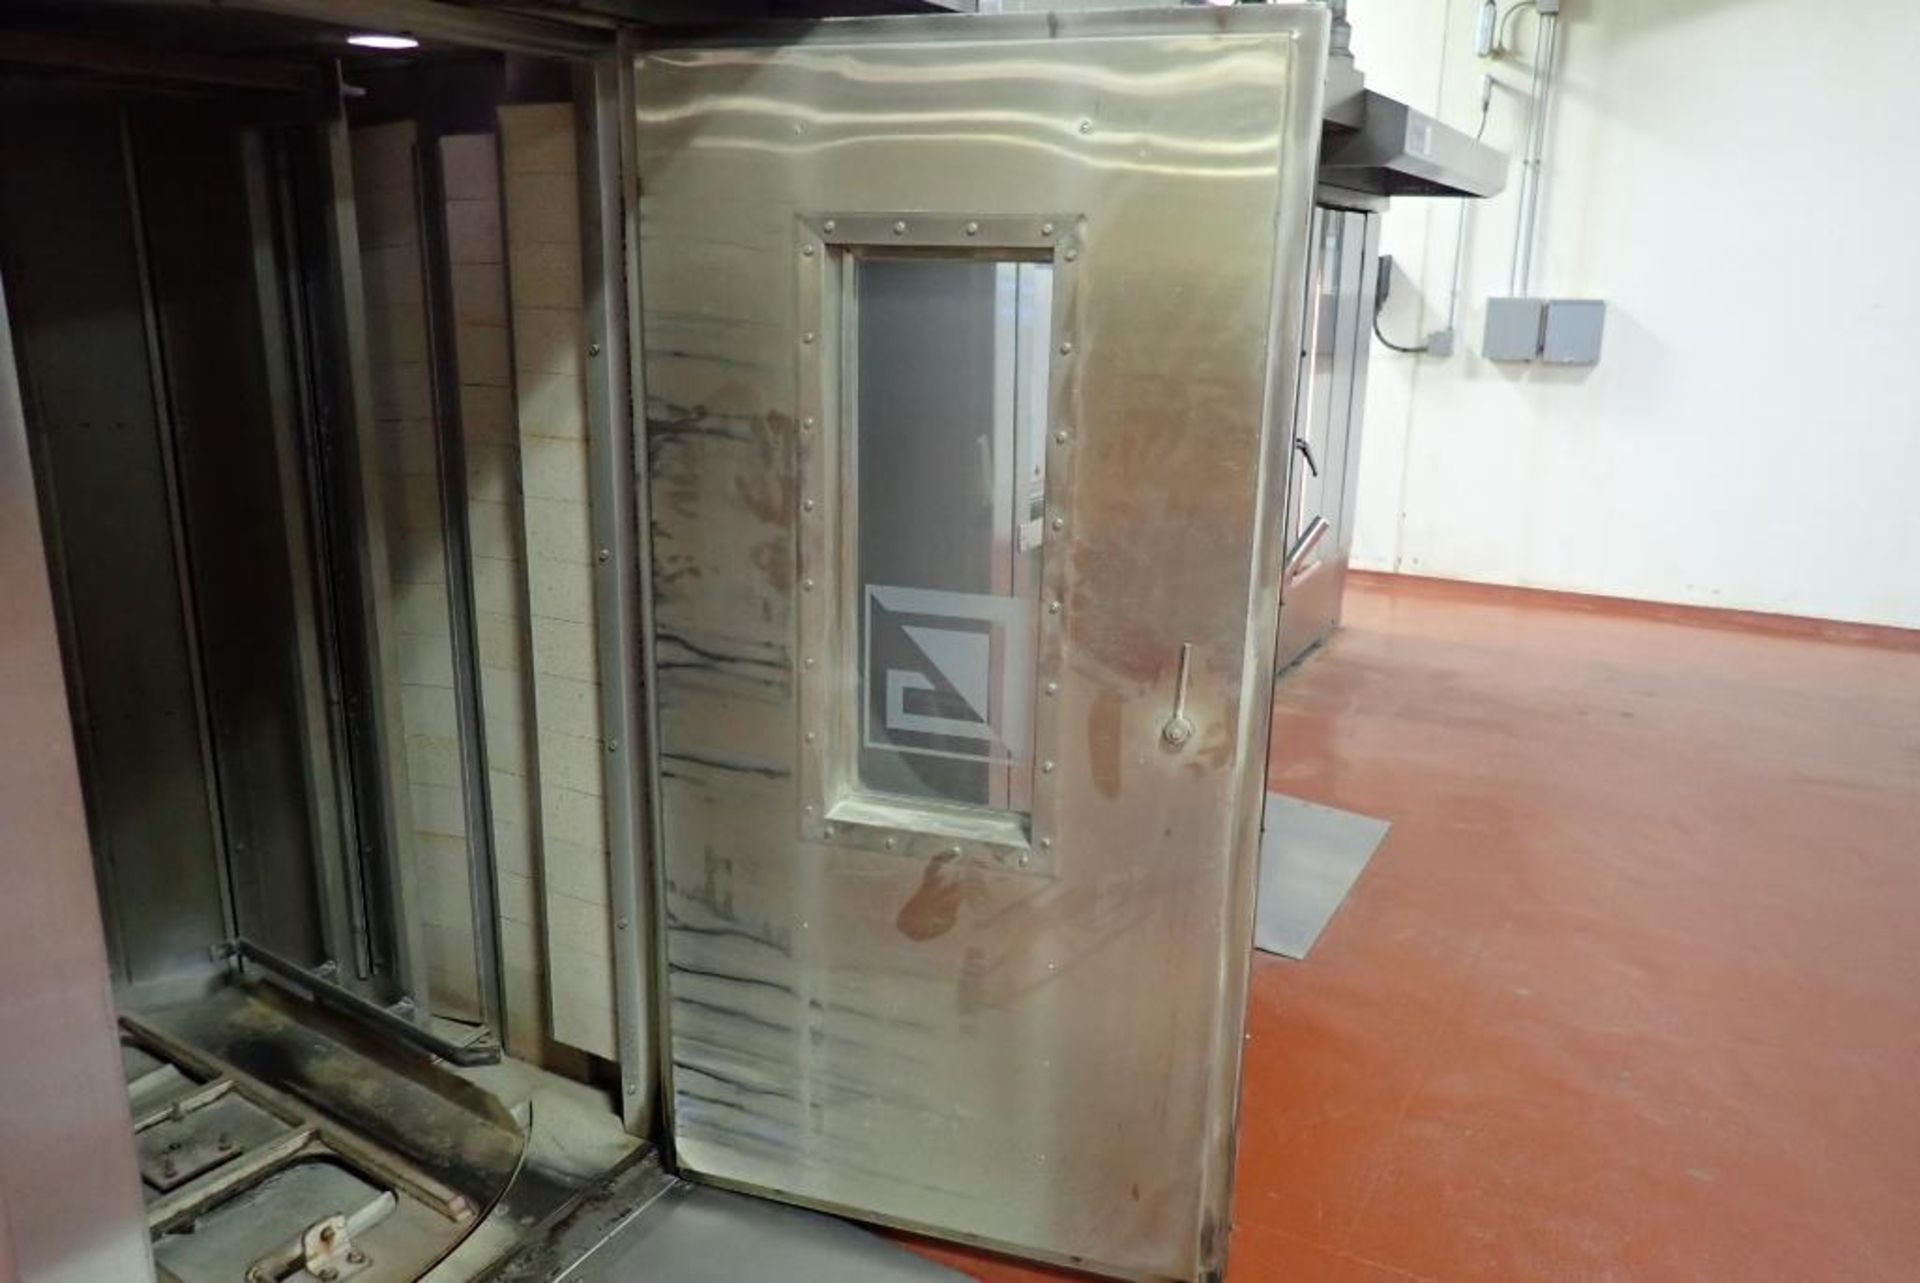 2005 Cinelli Bake Electron 2000 double rack oven - Image 8 of 22